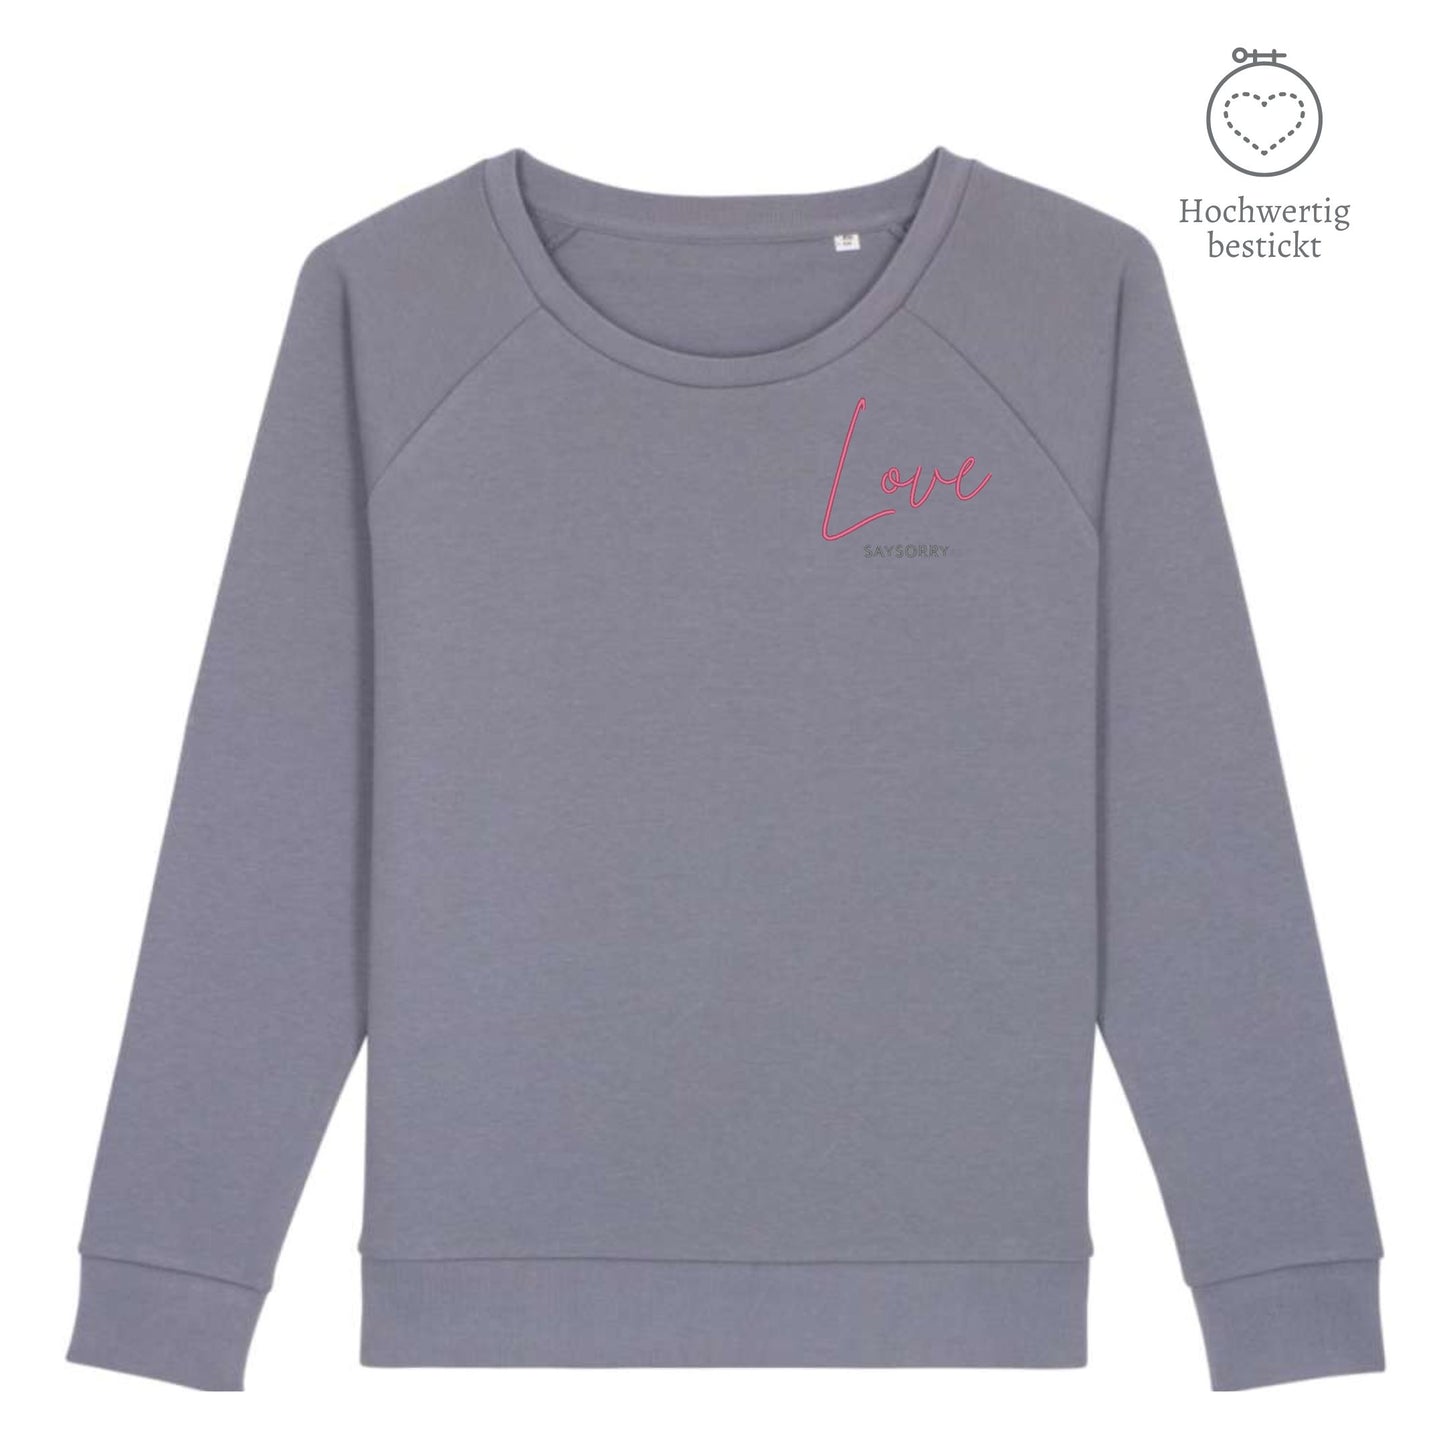 Organic Sweatshirt mit weitem Rundhals-Ausschnitt »Love« hochwertig bestickt Shirt SAYSORRY Lava Grey XS 